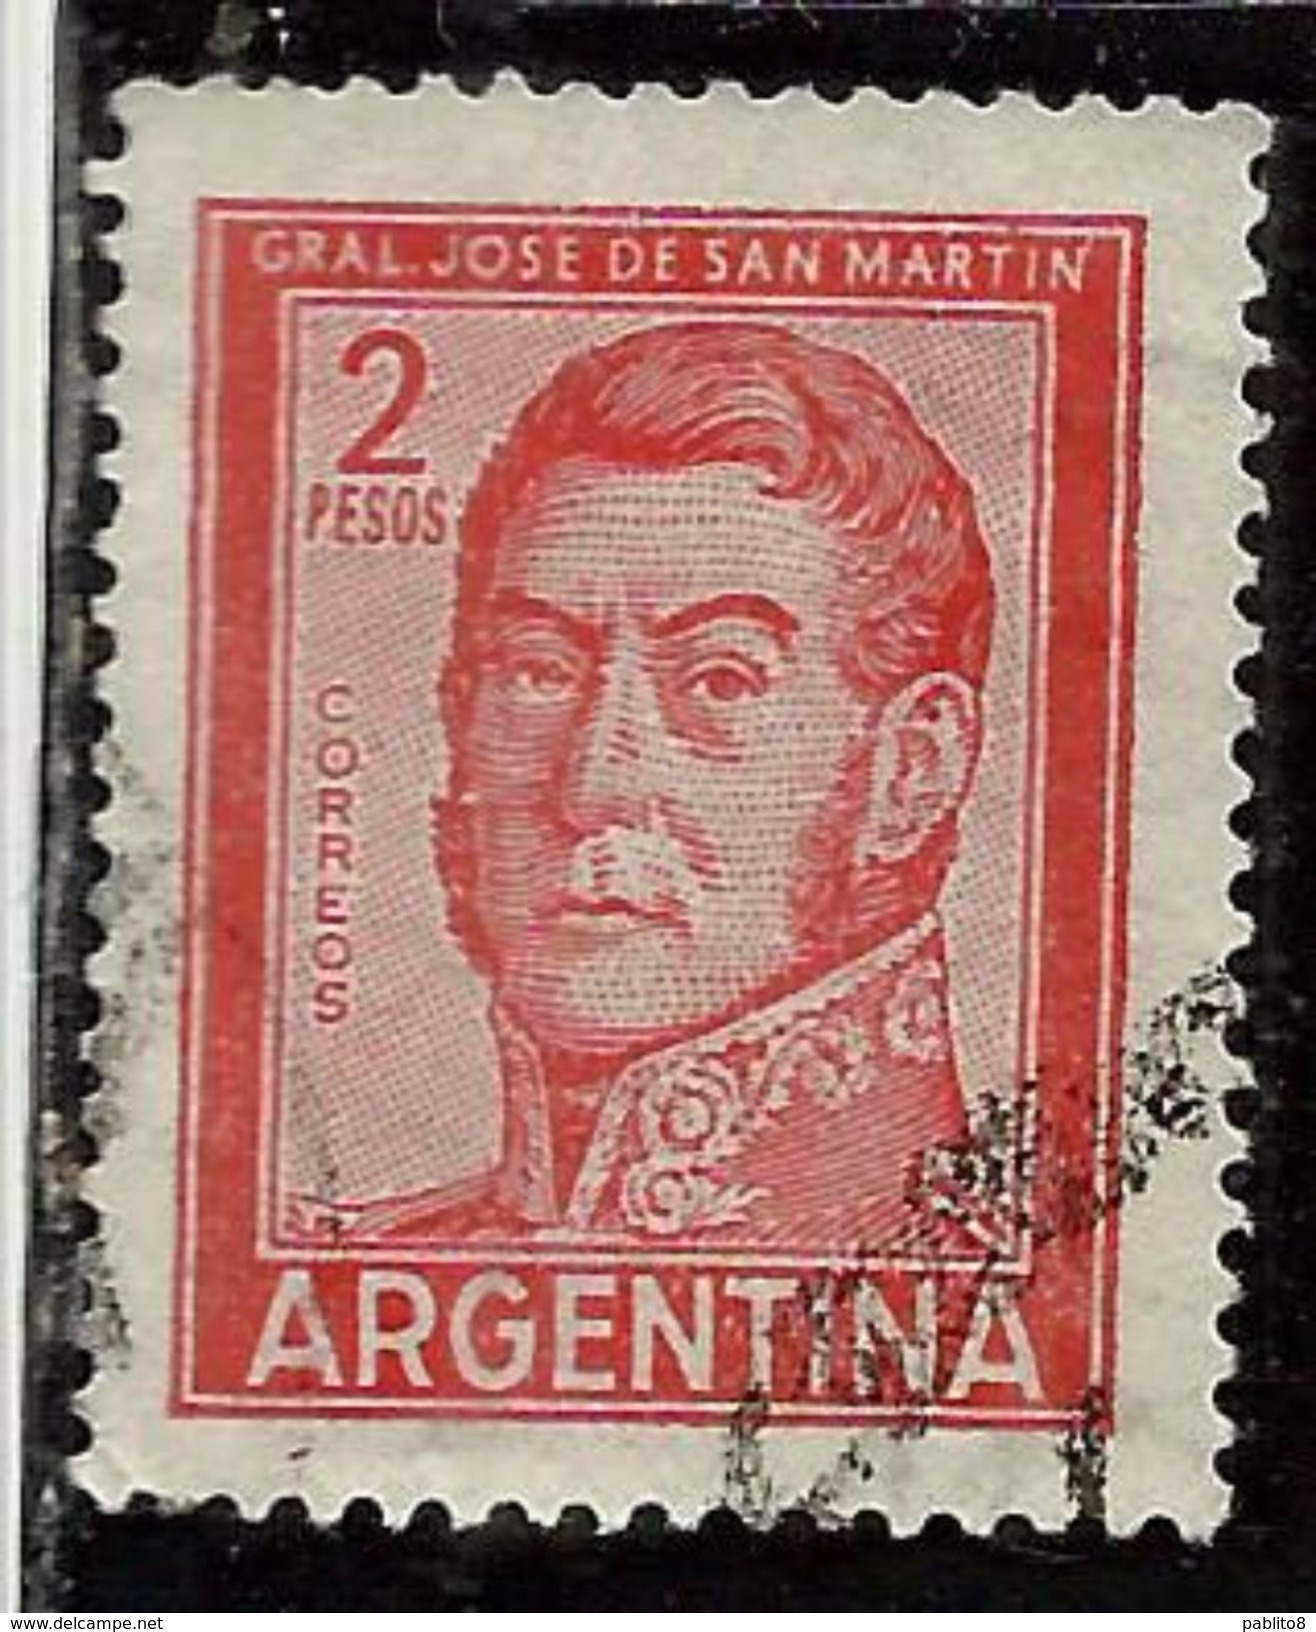 ARGENTINA 1959 1970 1961 JOSE DE SAN MARTIN 2p USATO USED OBLITERE' - Usati